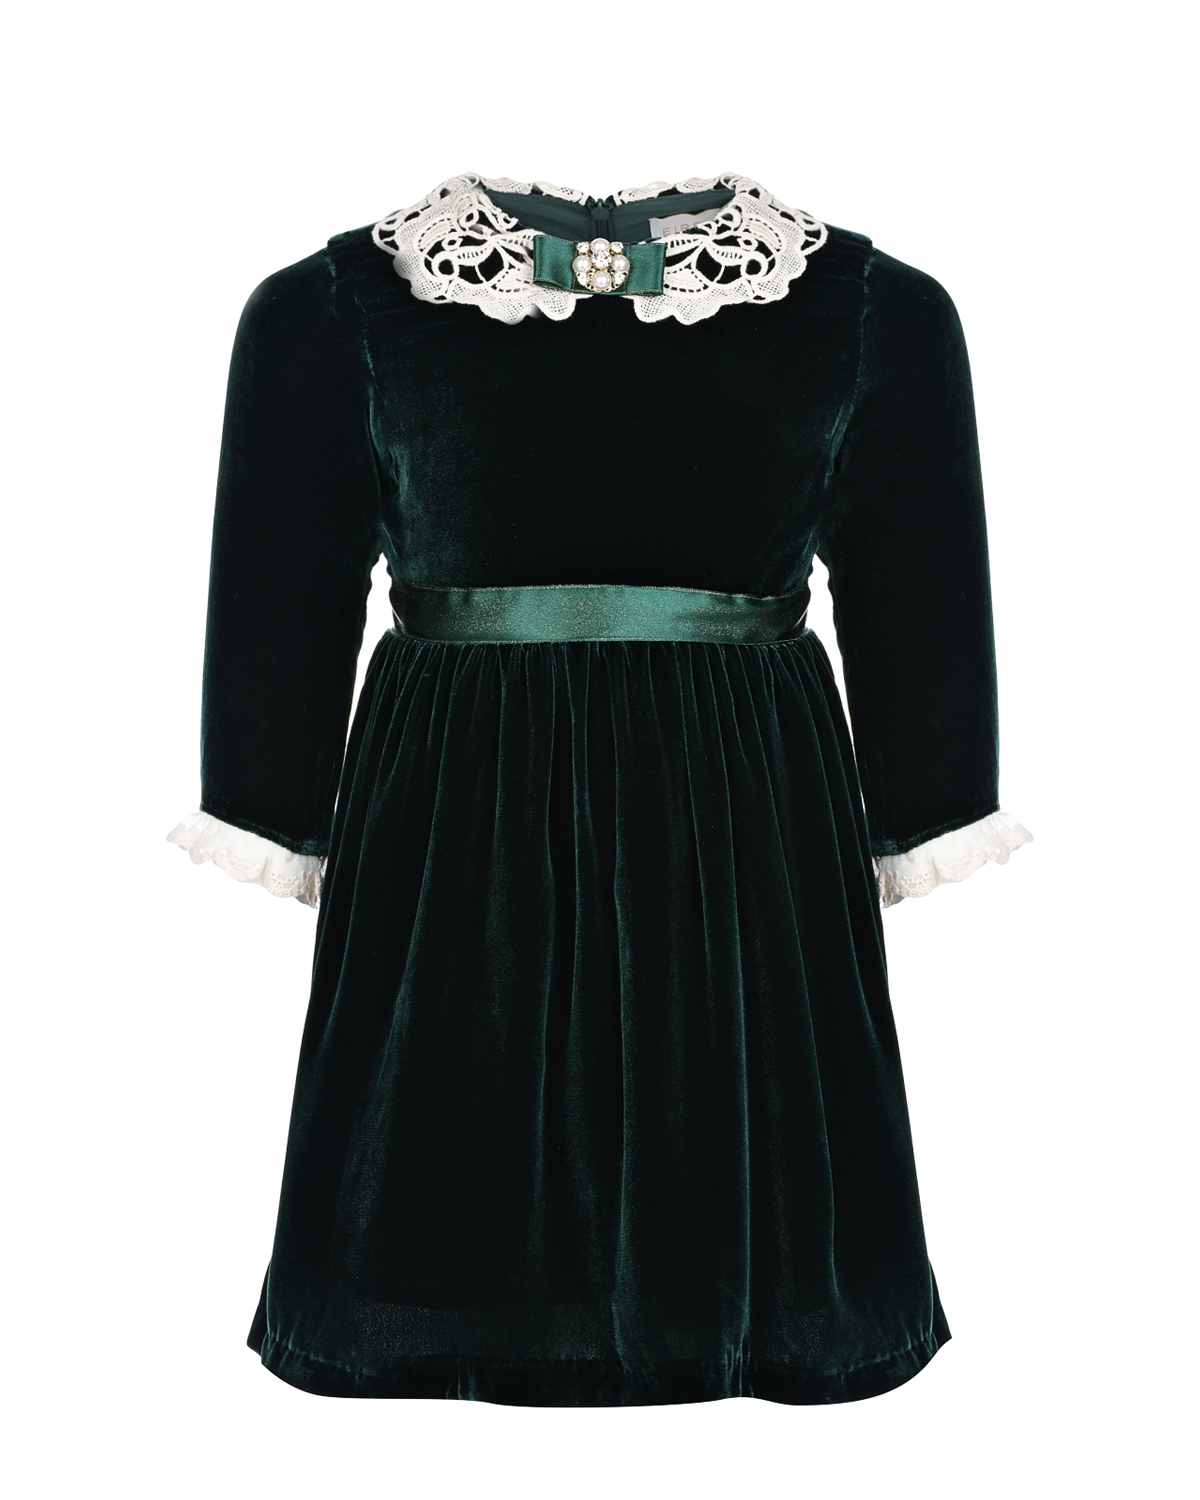 Бархатное платье темно-зеленого цвета Eirene детское